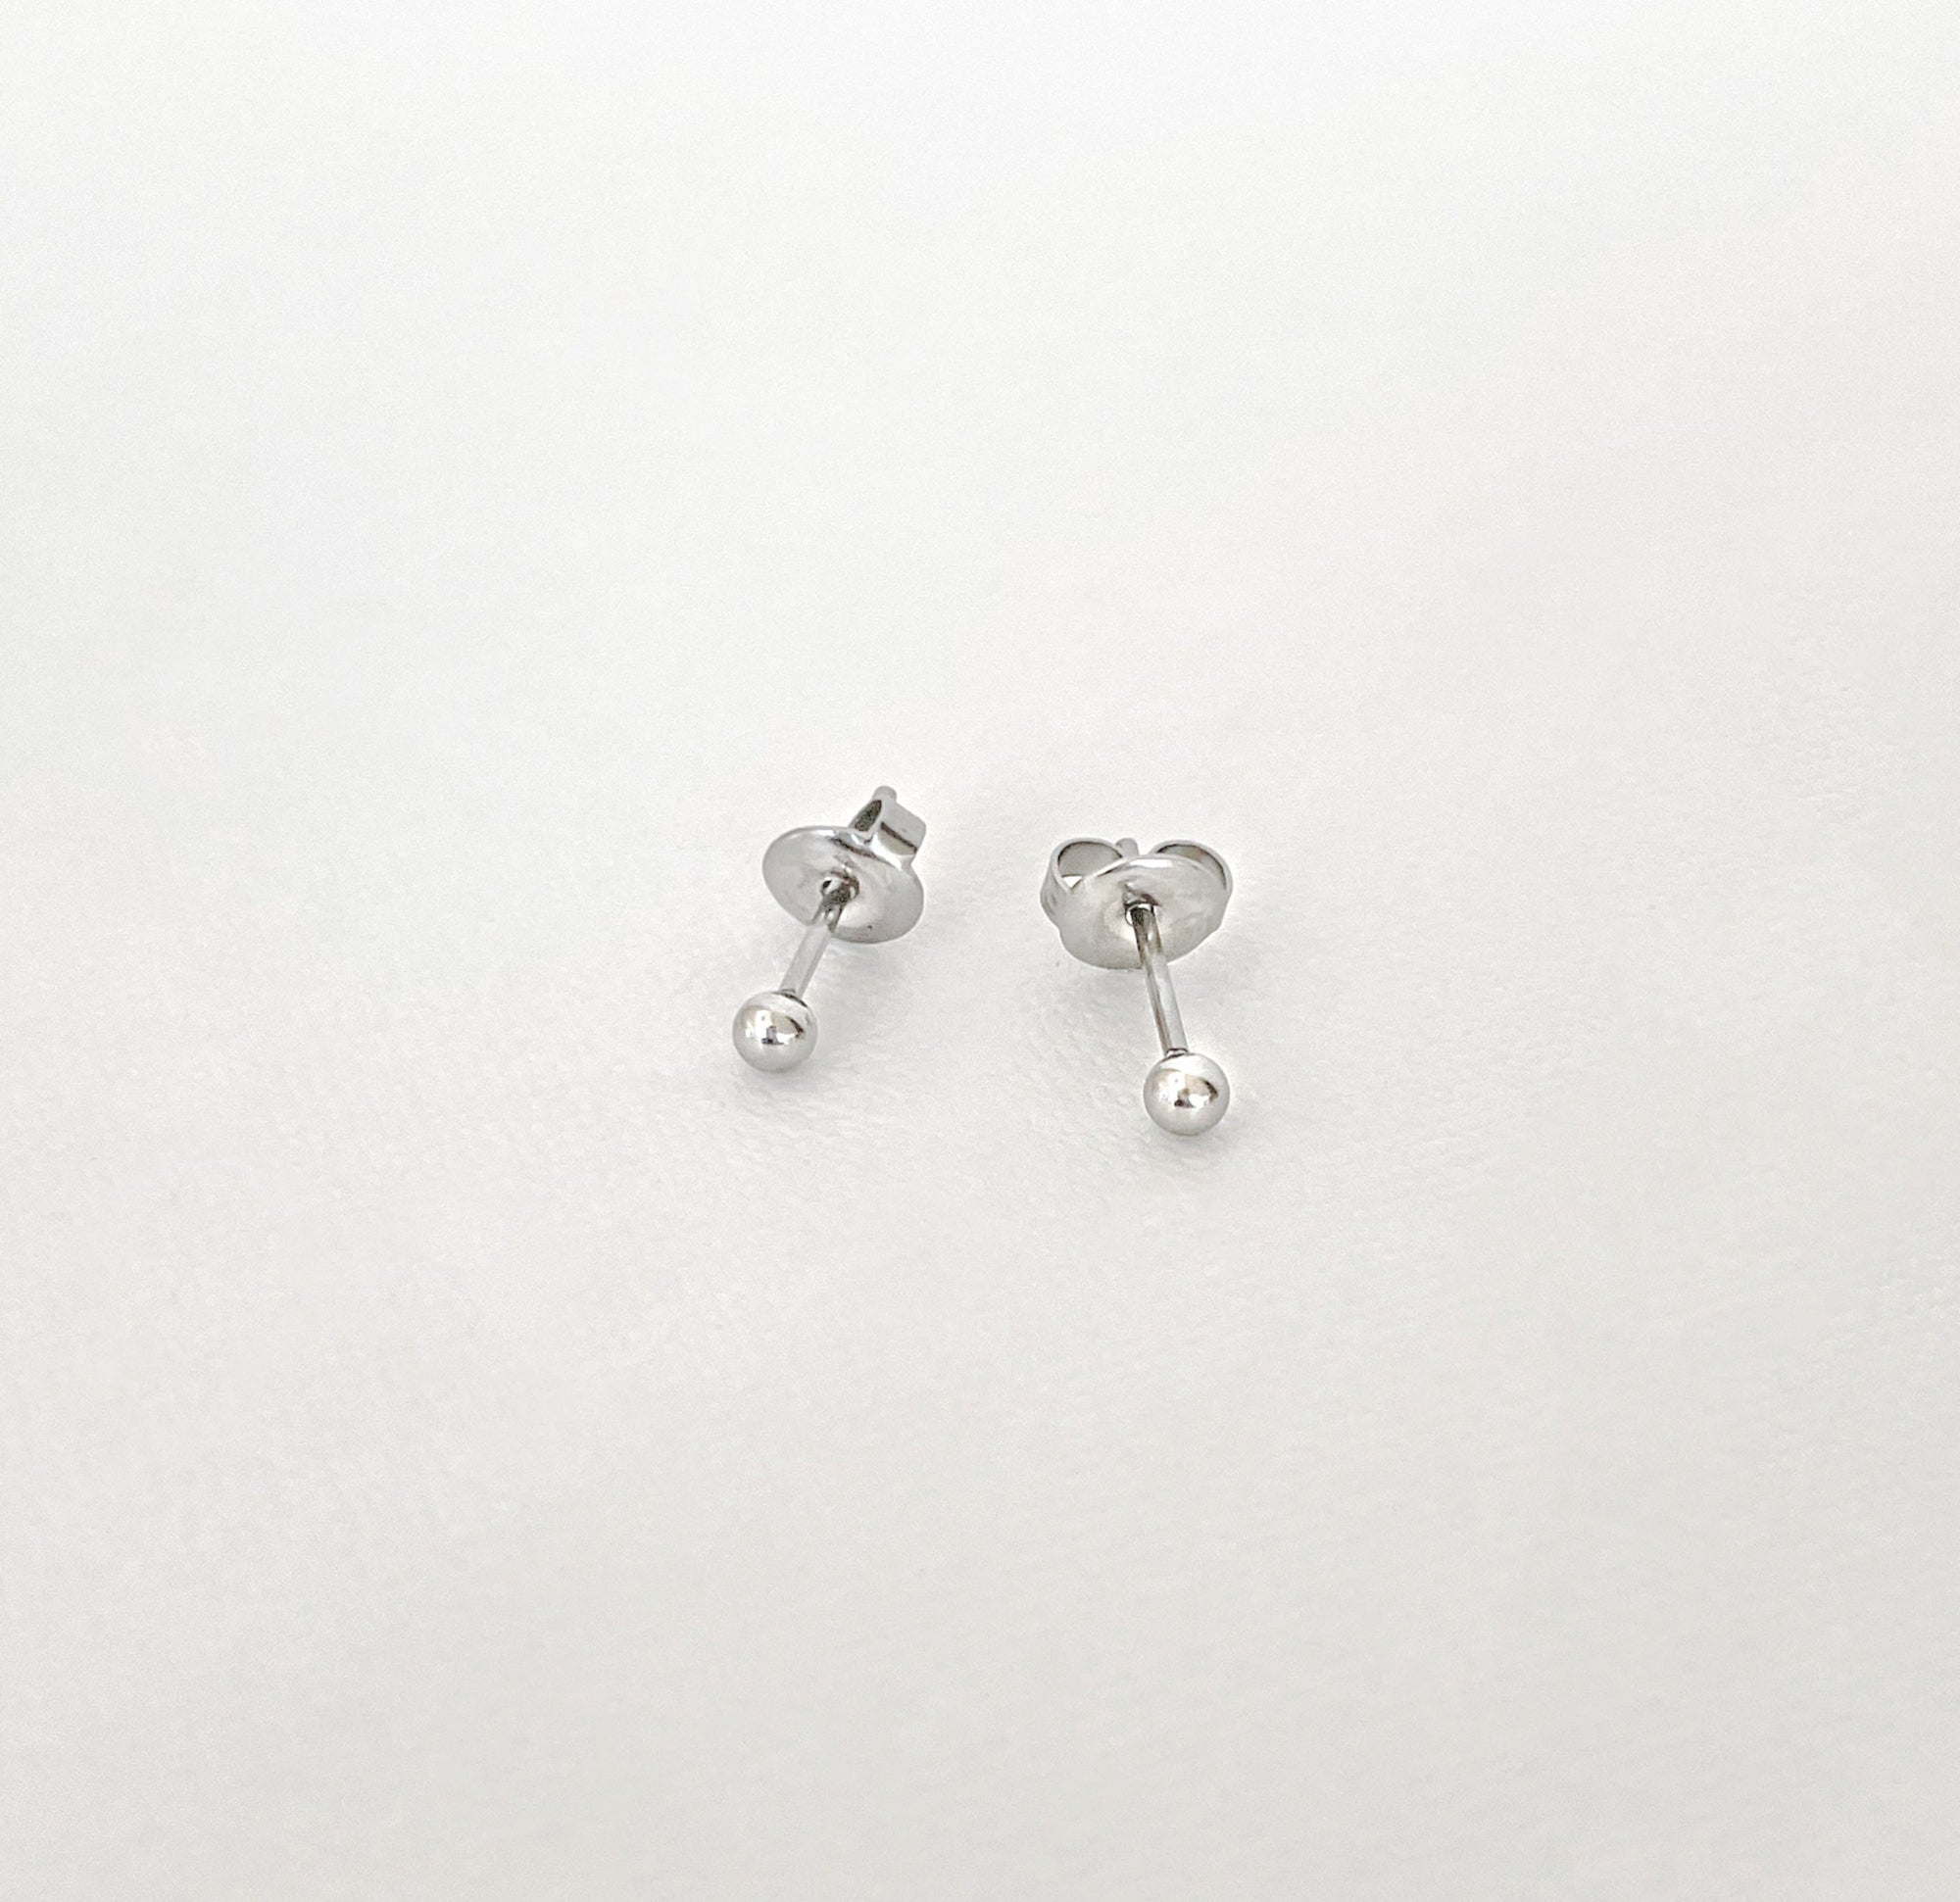 xs silver ball stud earrings waterproof jewelry